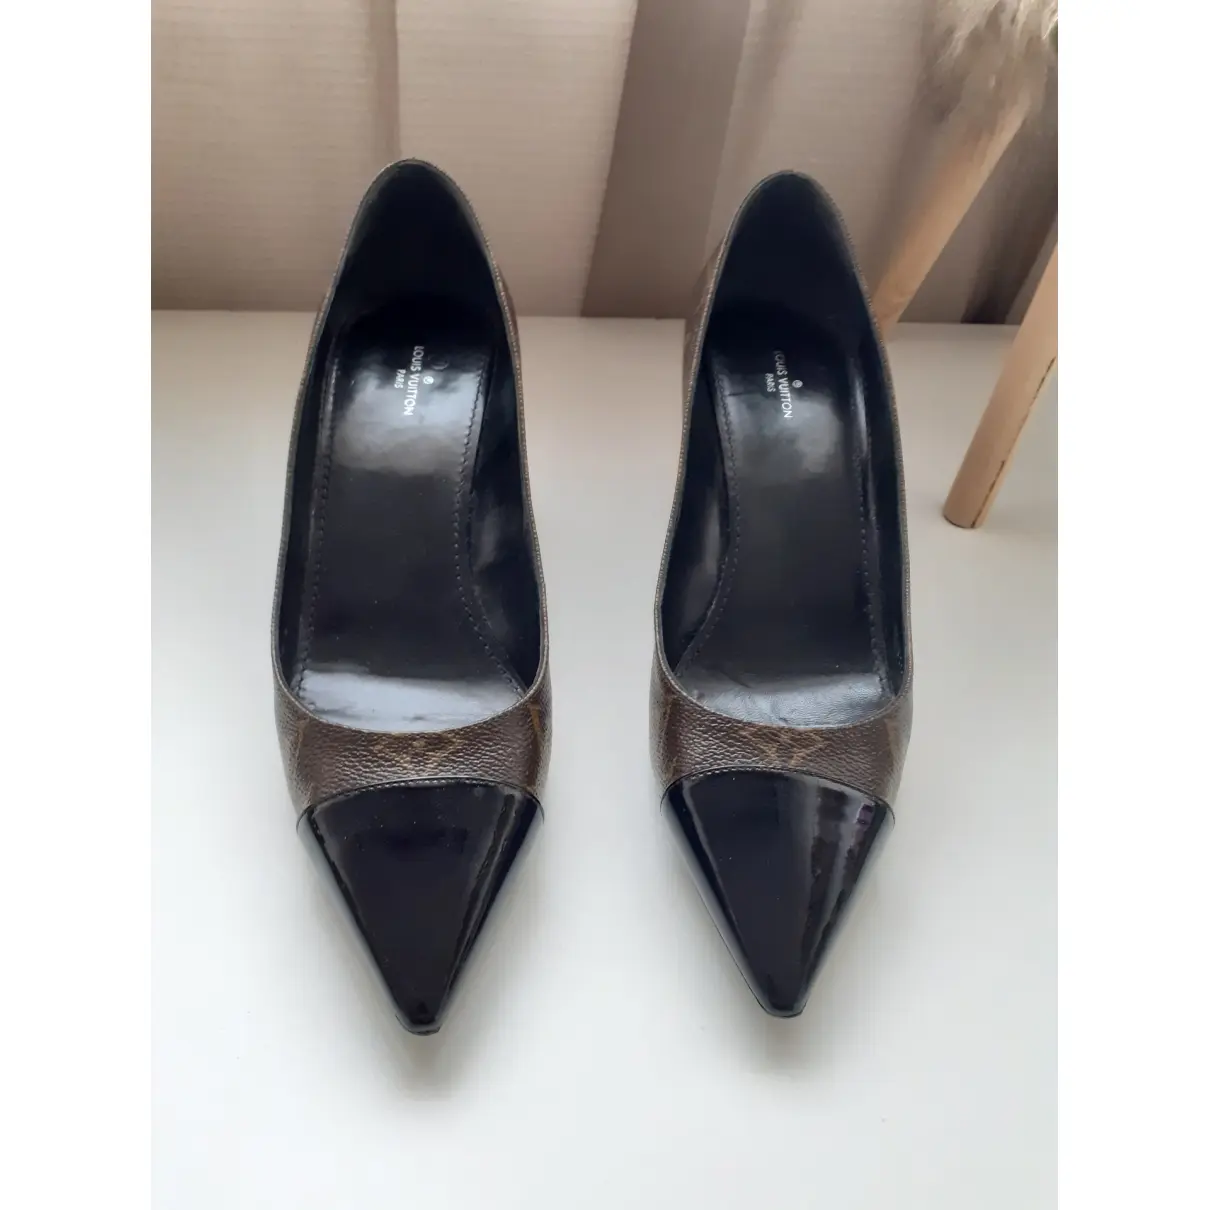 Buy Louis Vuitton Cherie cloth heels online